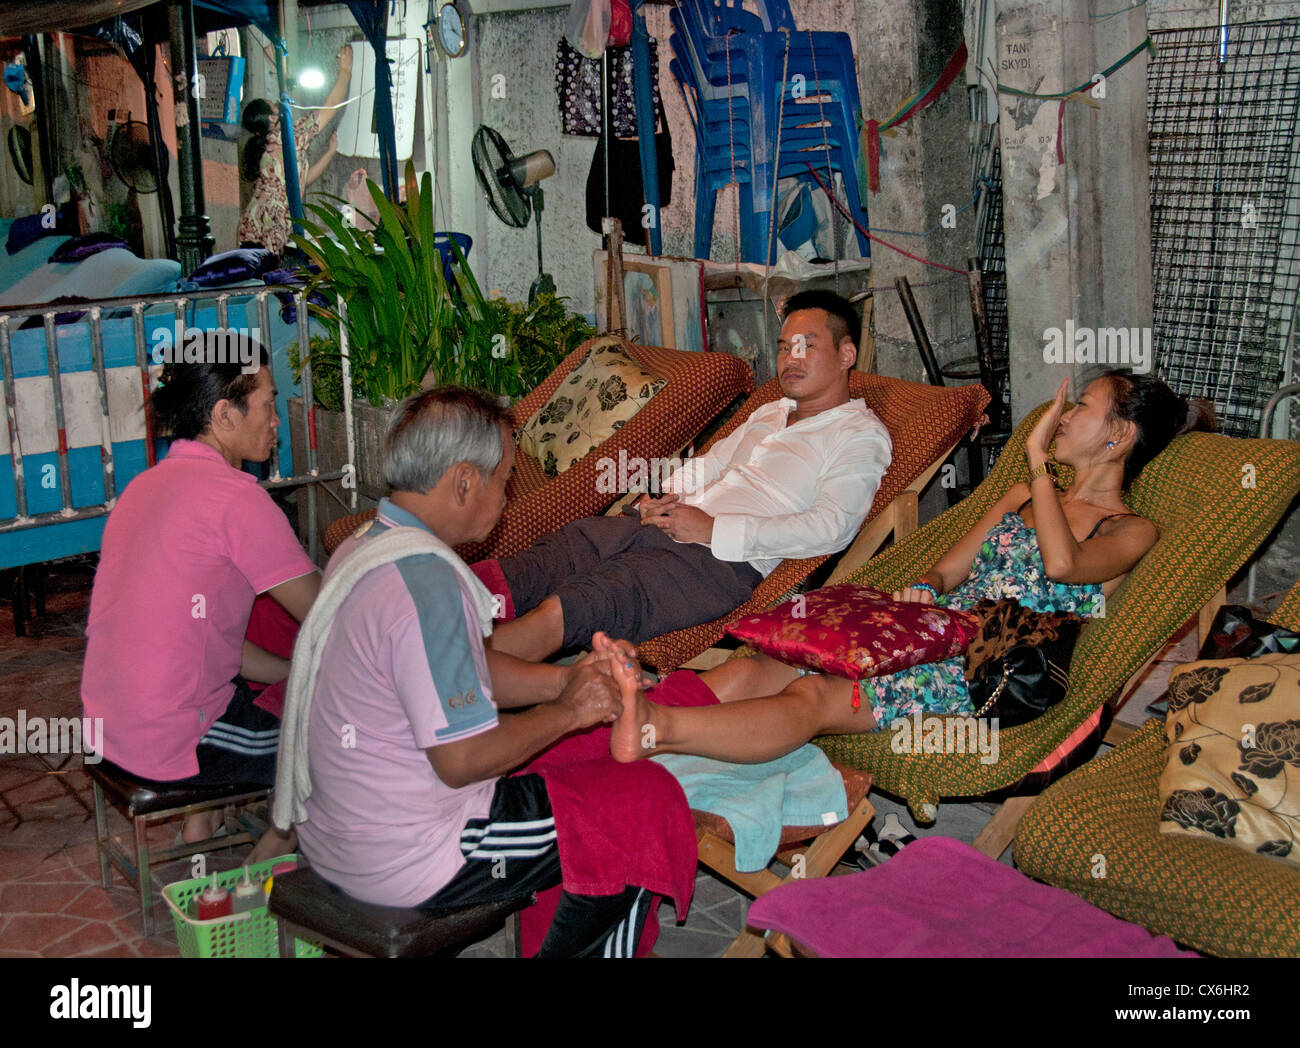 Ausländische Touristen erhalten in der Öffentlichkeit auf der Khao San Road Relax Massage Beauty Salon Bangkok Thailand massage Stockfoto